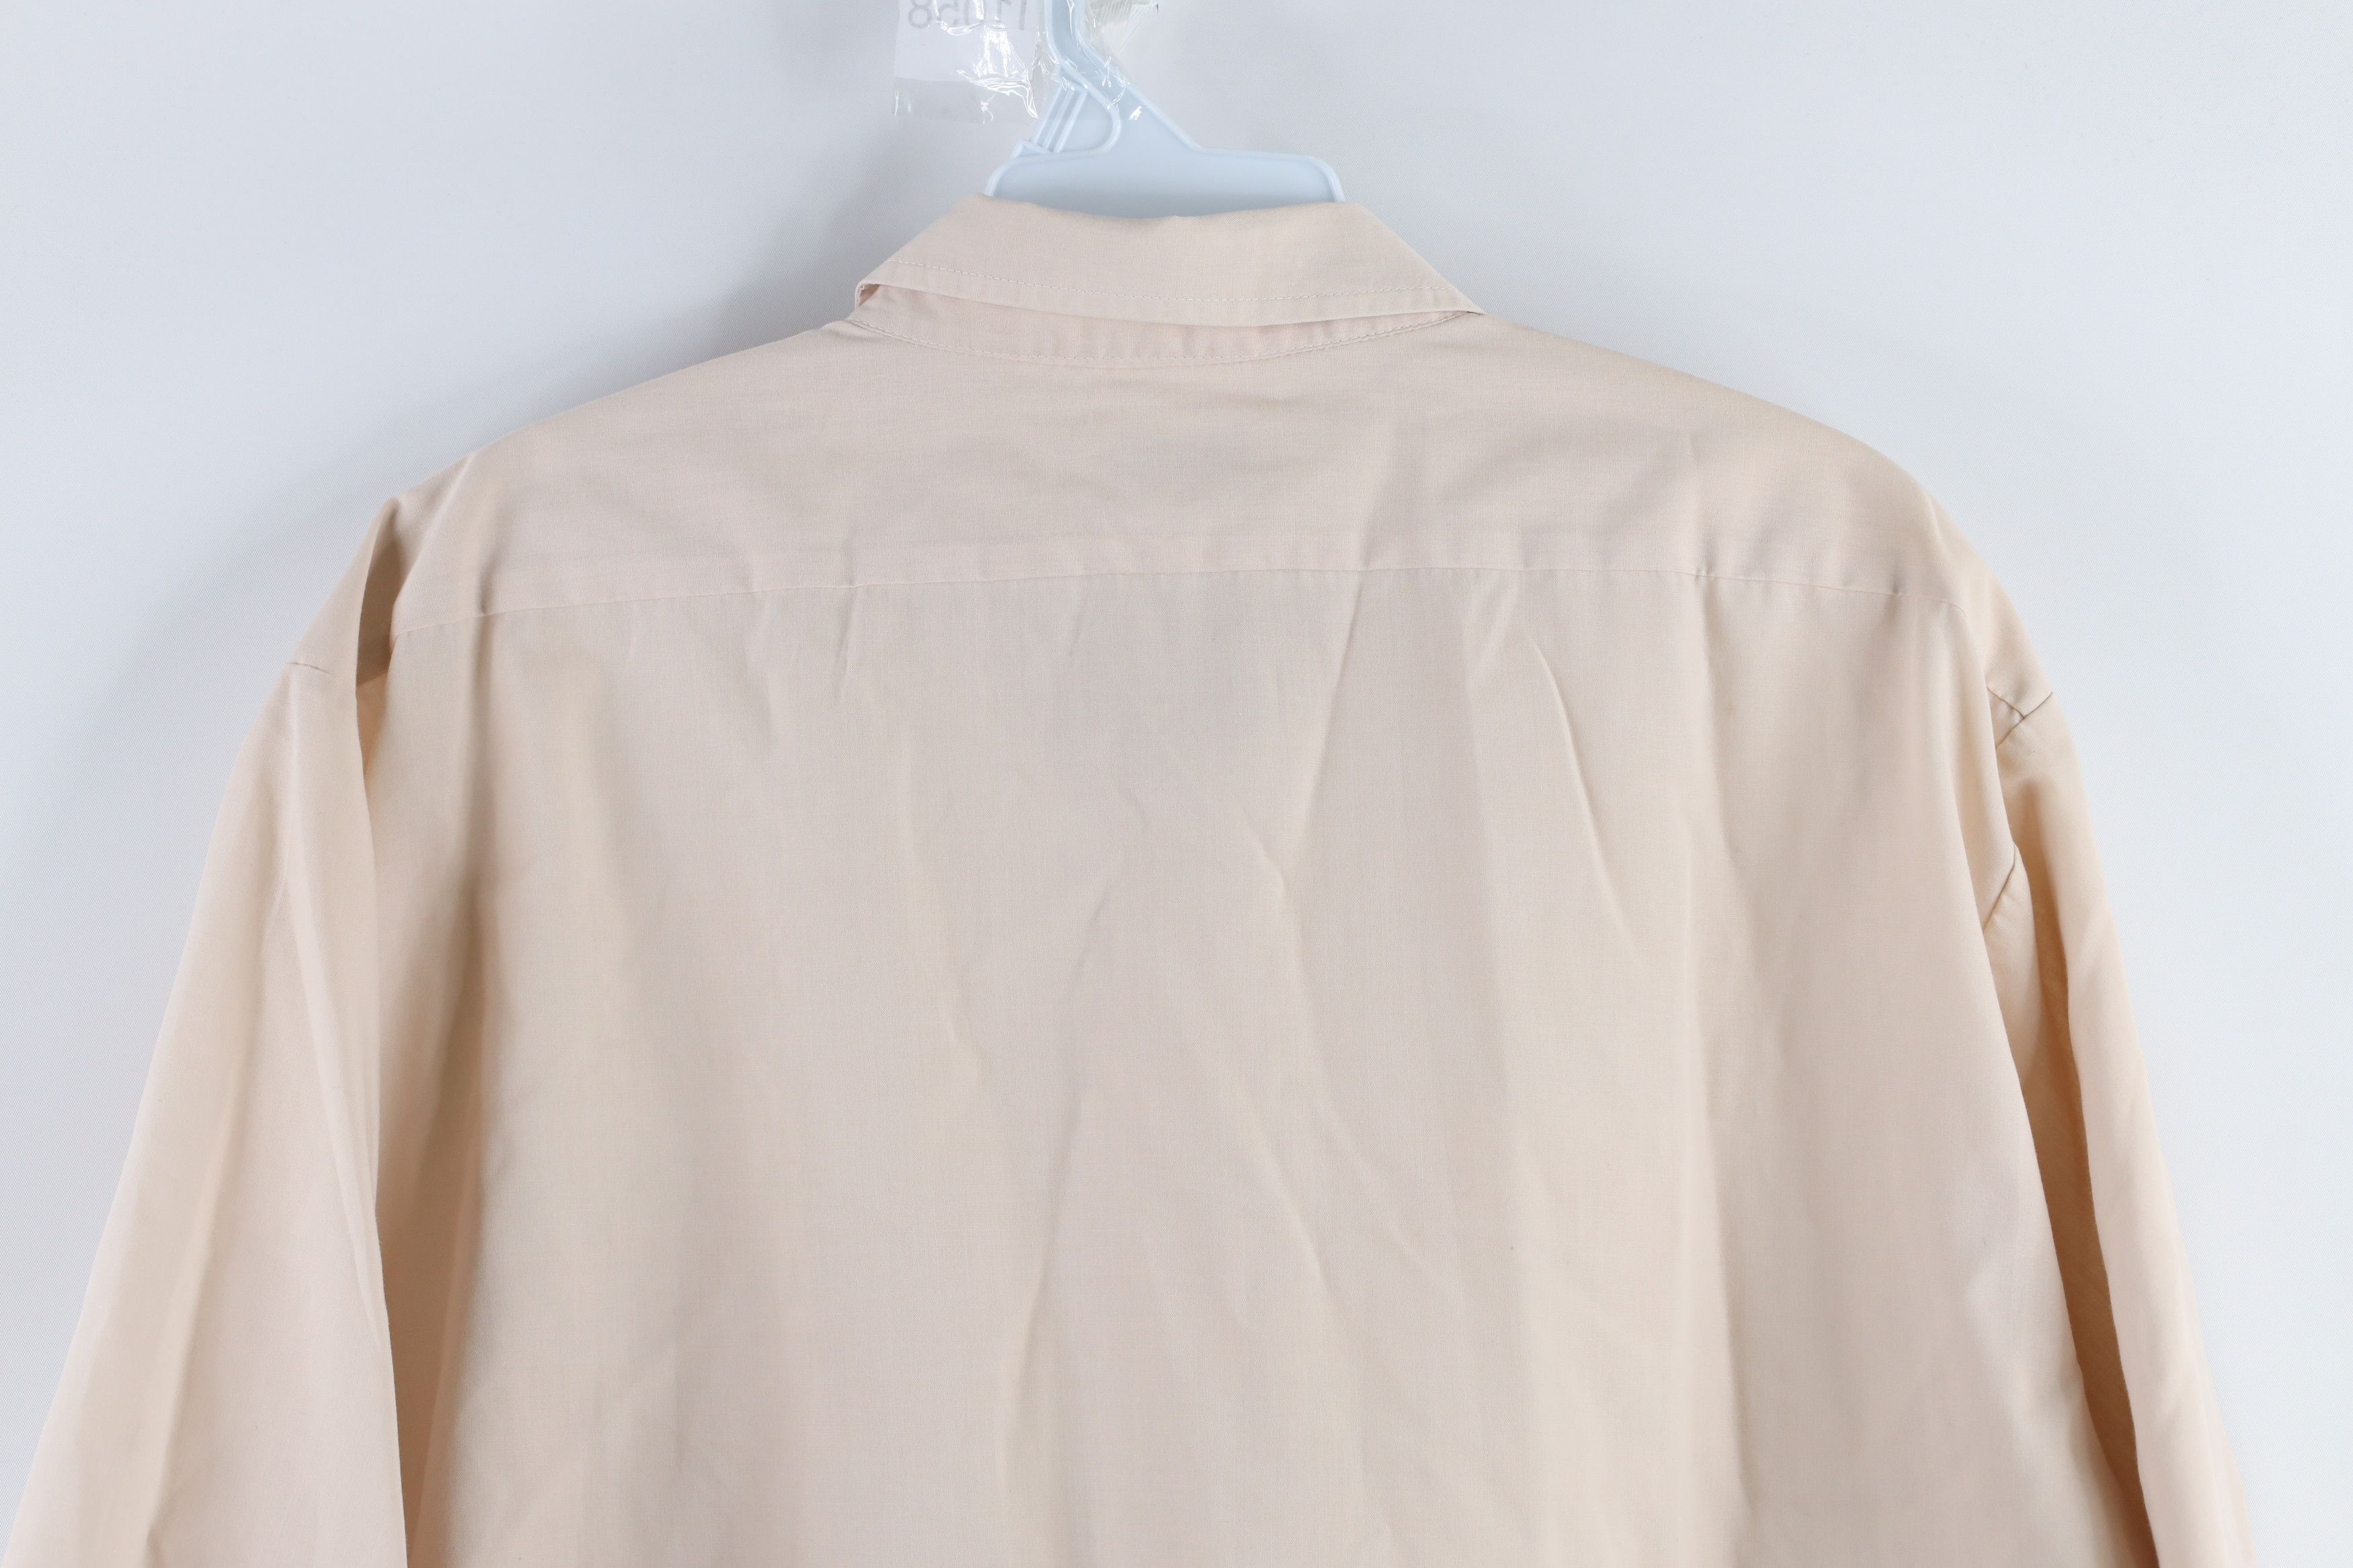 Vintage Vintage 70s Short Sleeve Mechanic Button Shirt Beige Tan Size US L / EU 52-54 / 3 - 6 Thumbnail